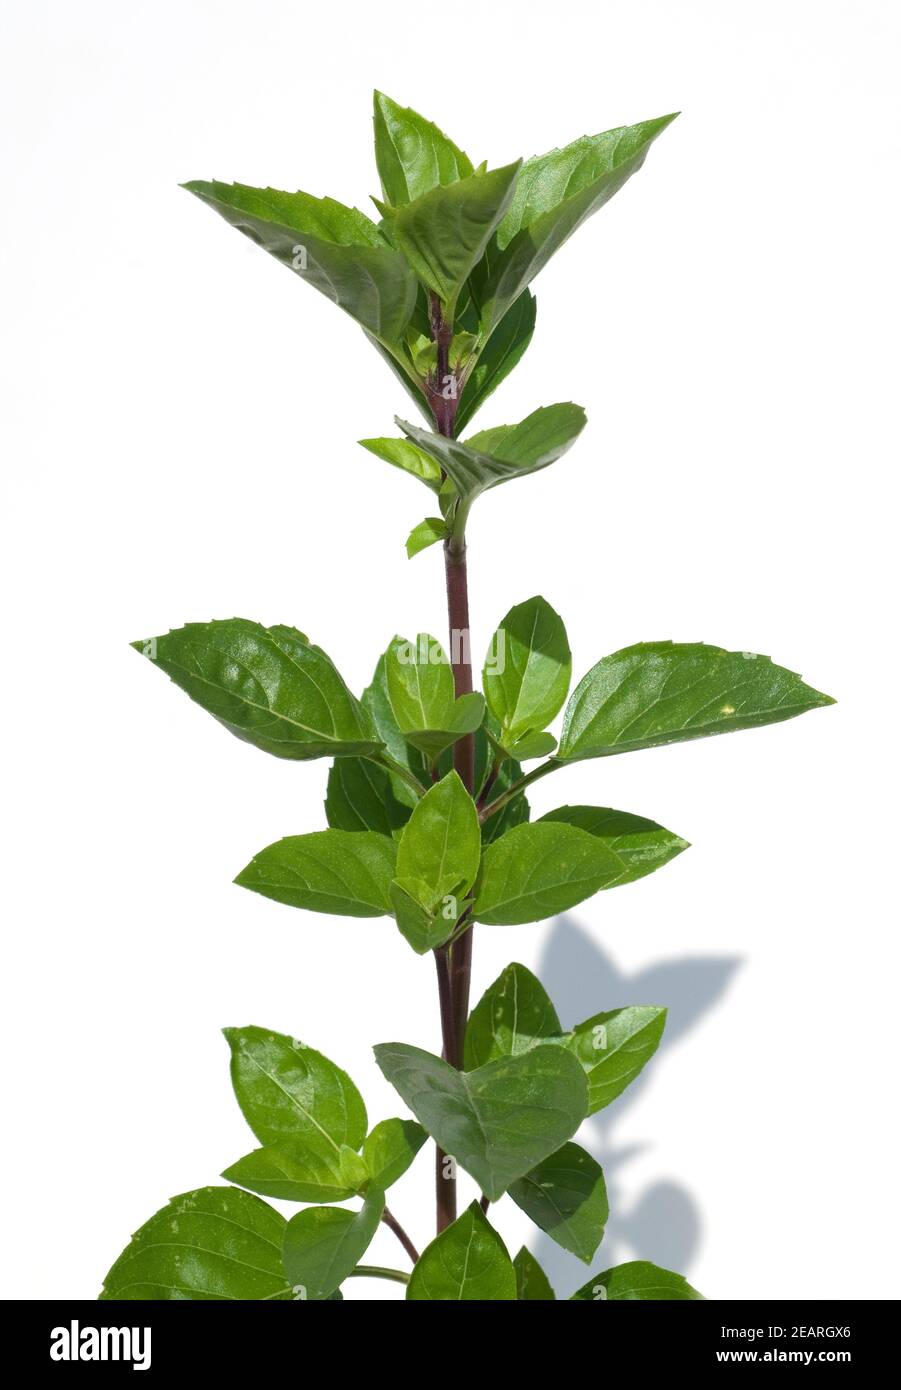 Strauchbasilikum, Ocimum, species  basilicum Stock Photo